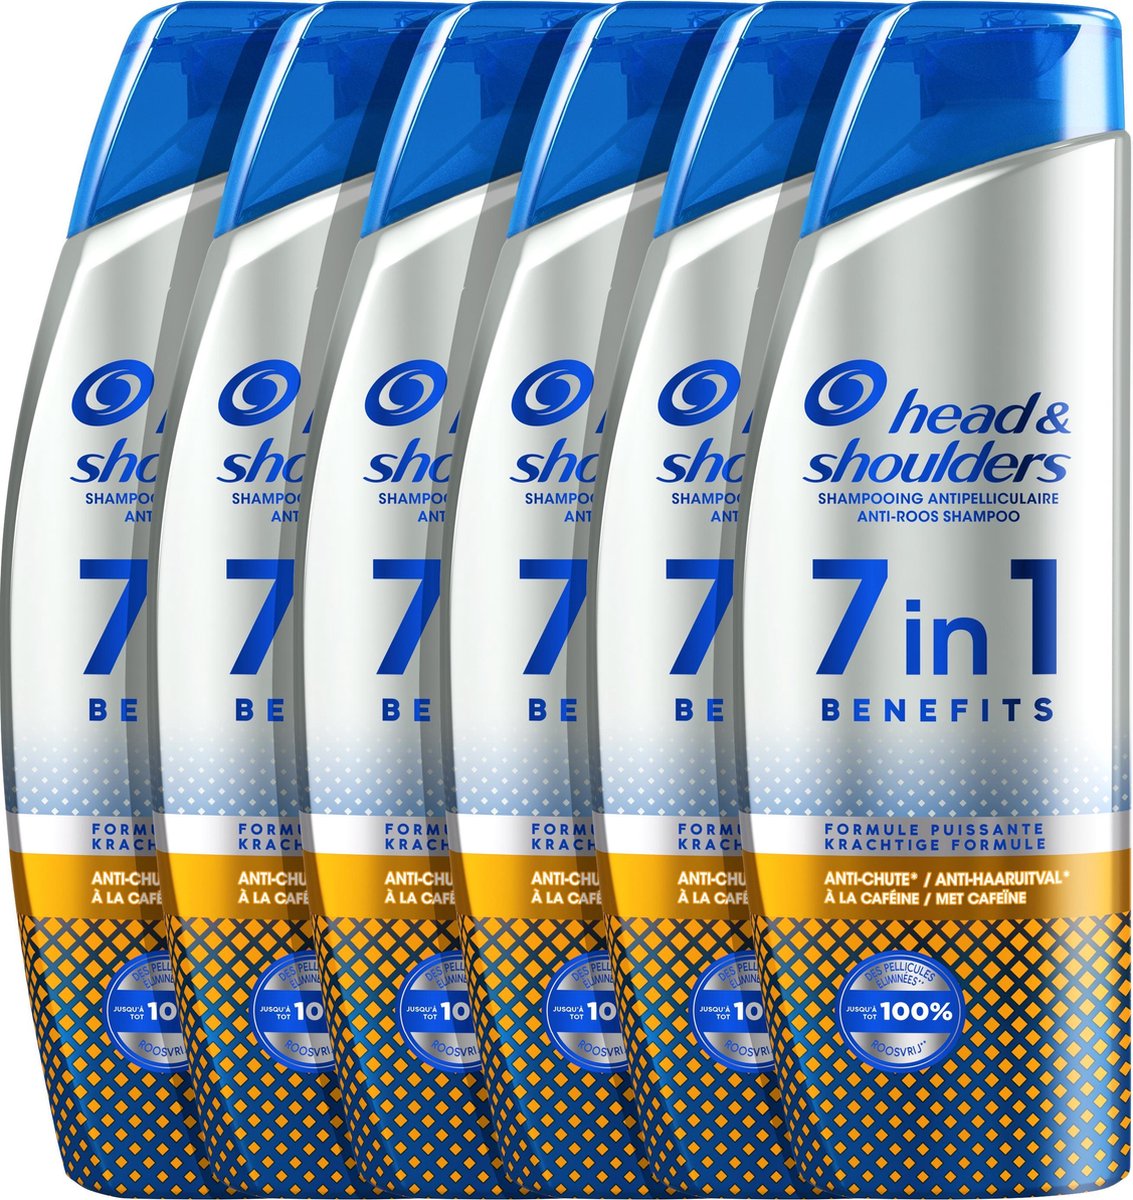 Head & Shoulders Anti-Haaruitval - anti-roos shampoo - 7in1 voordelen - Krachtige formule - Voordeelverpakking 6 x 225 ml